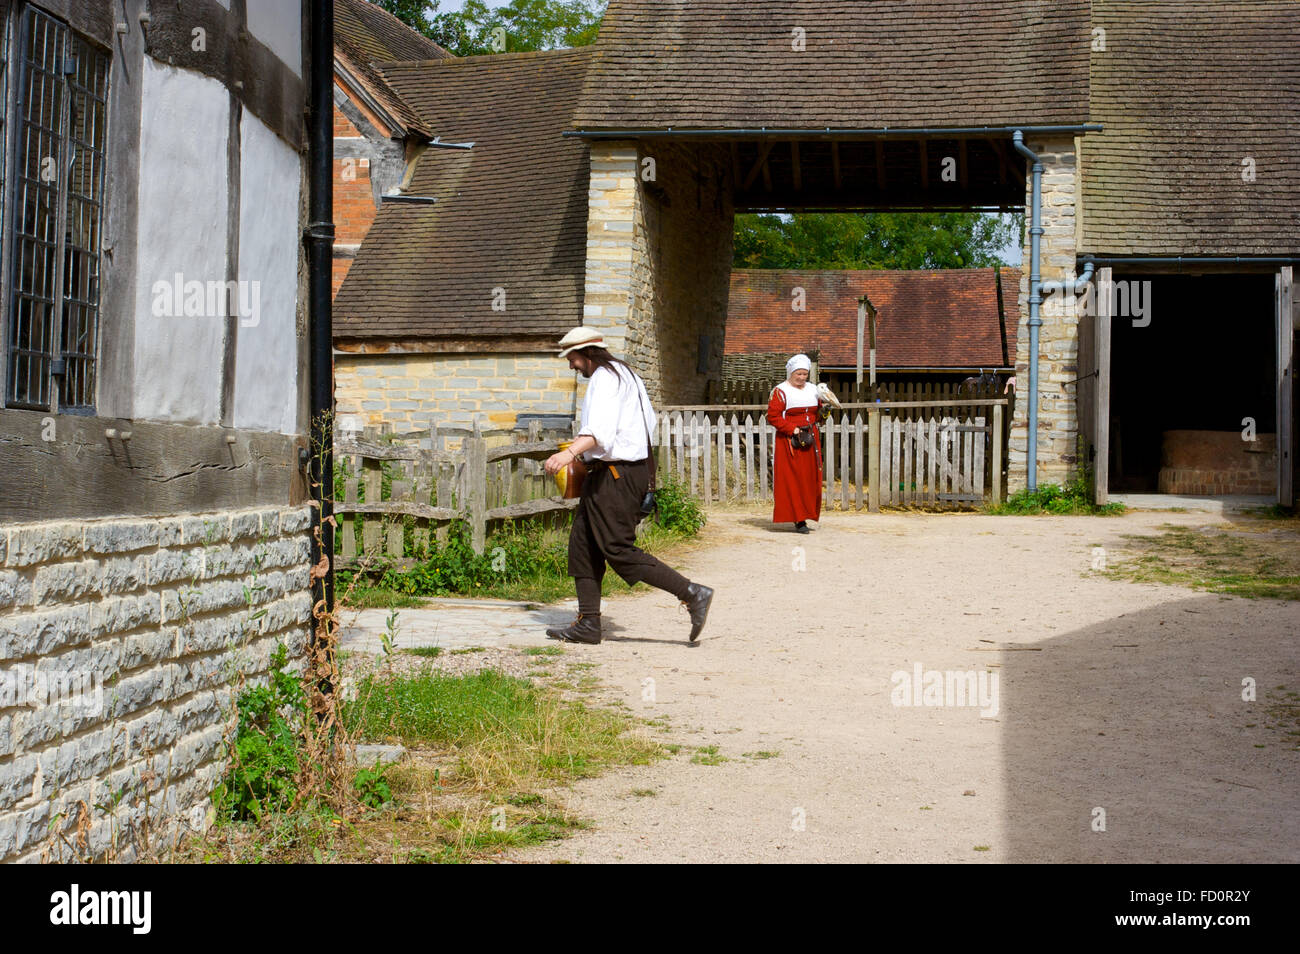 Turisti fuori dalla Mary Arden's Farm un tempo dimora di William Shakespeare a Stratford-upon-Avon. Foto Stock